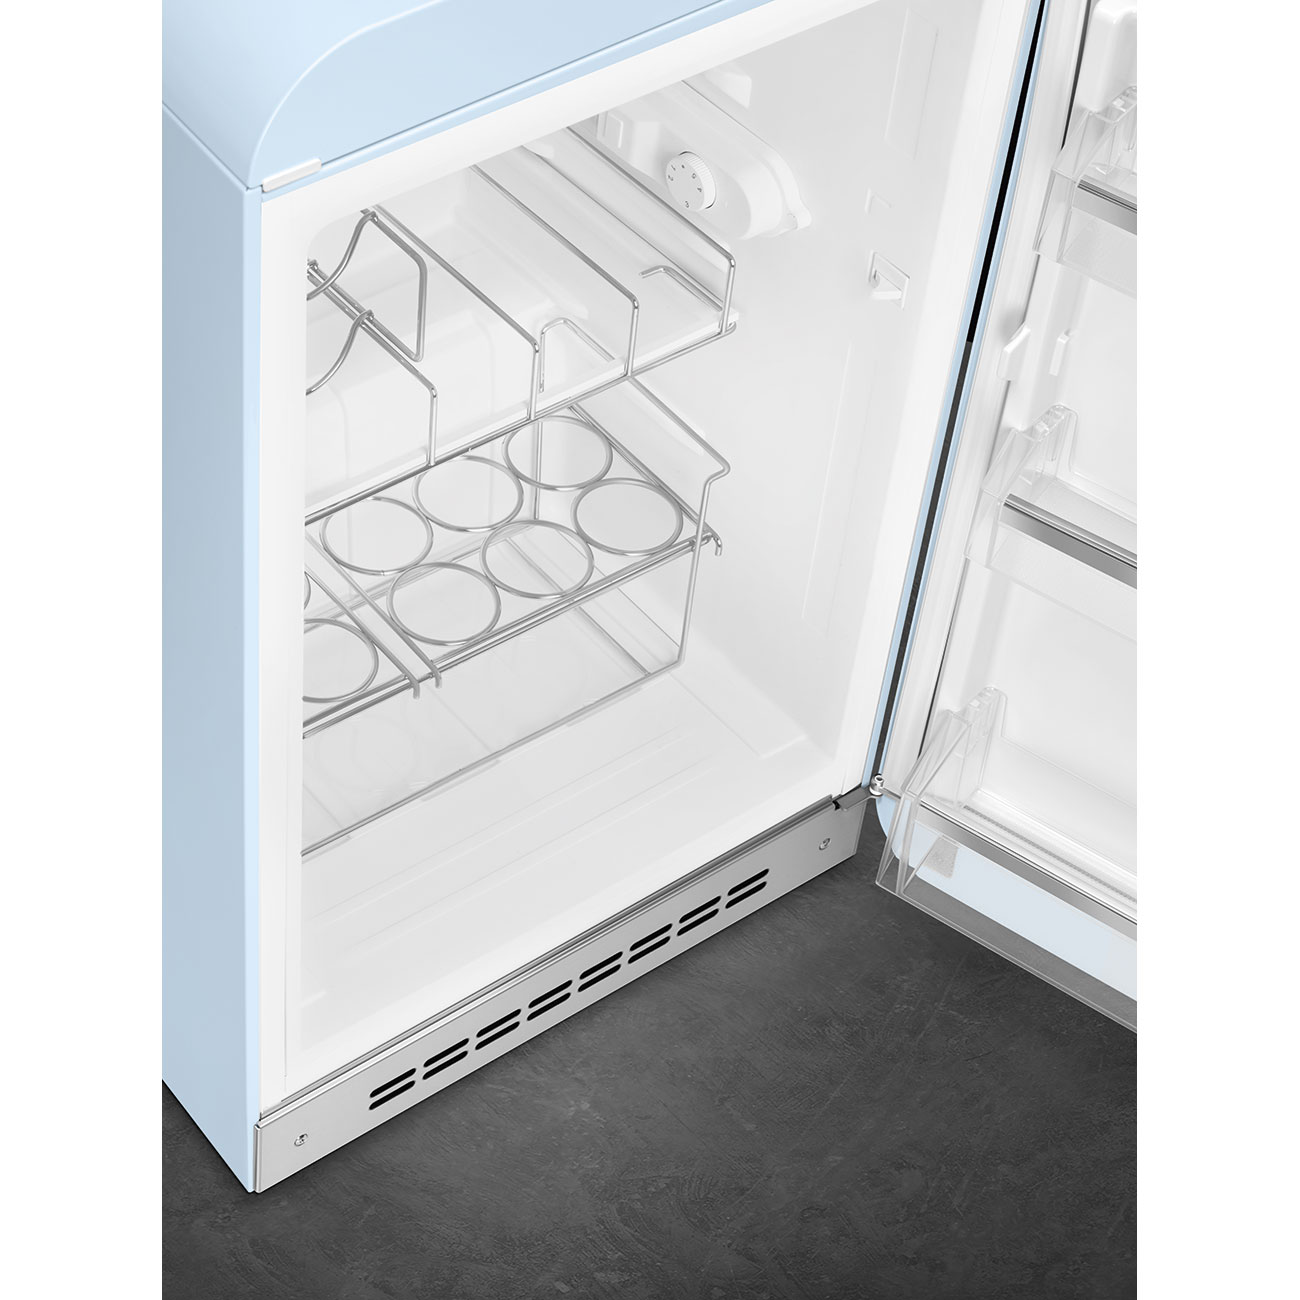 Pastel blue refrigerator - Smeg_8